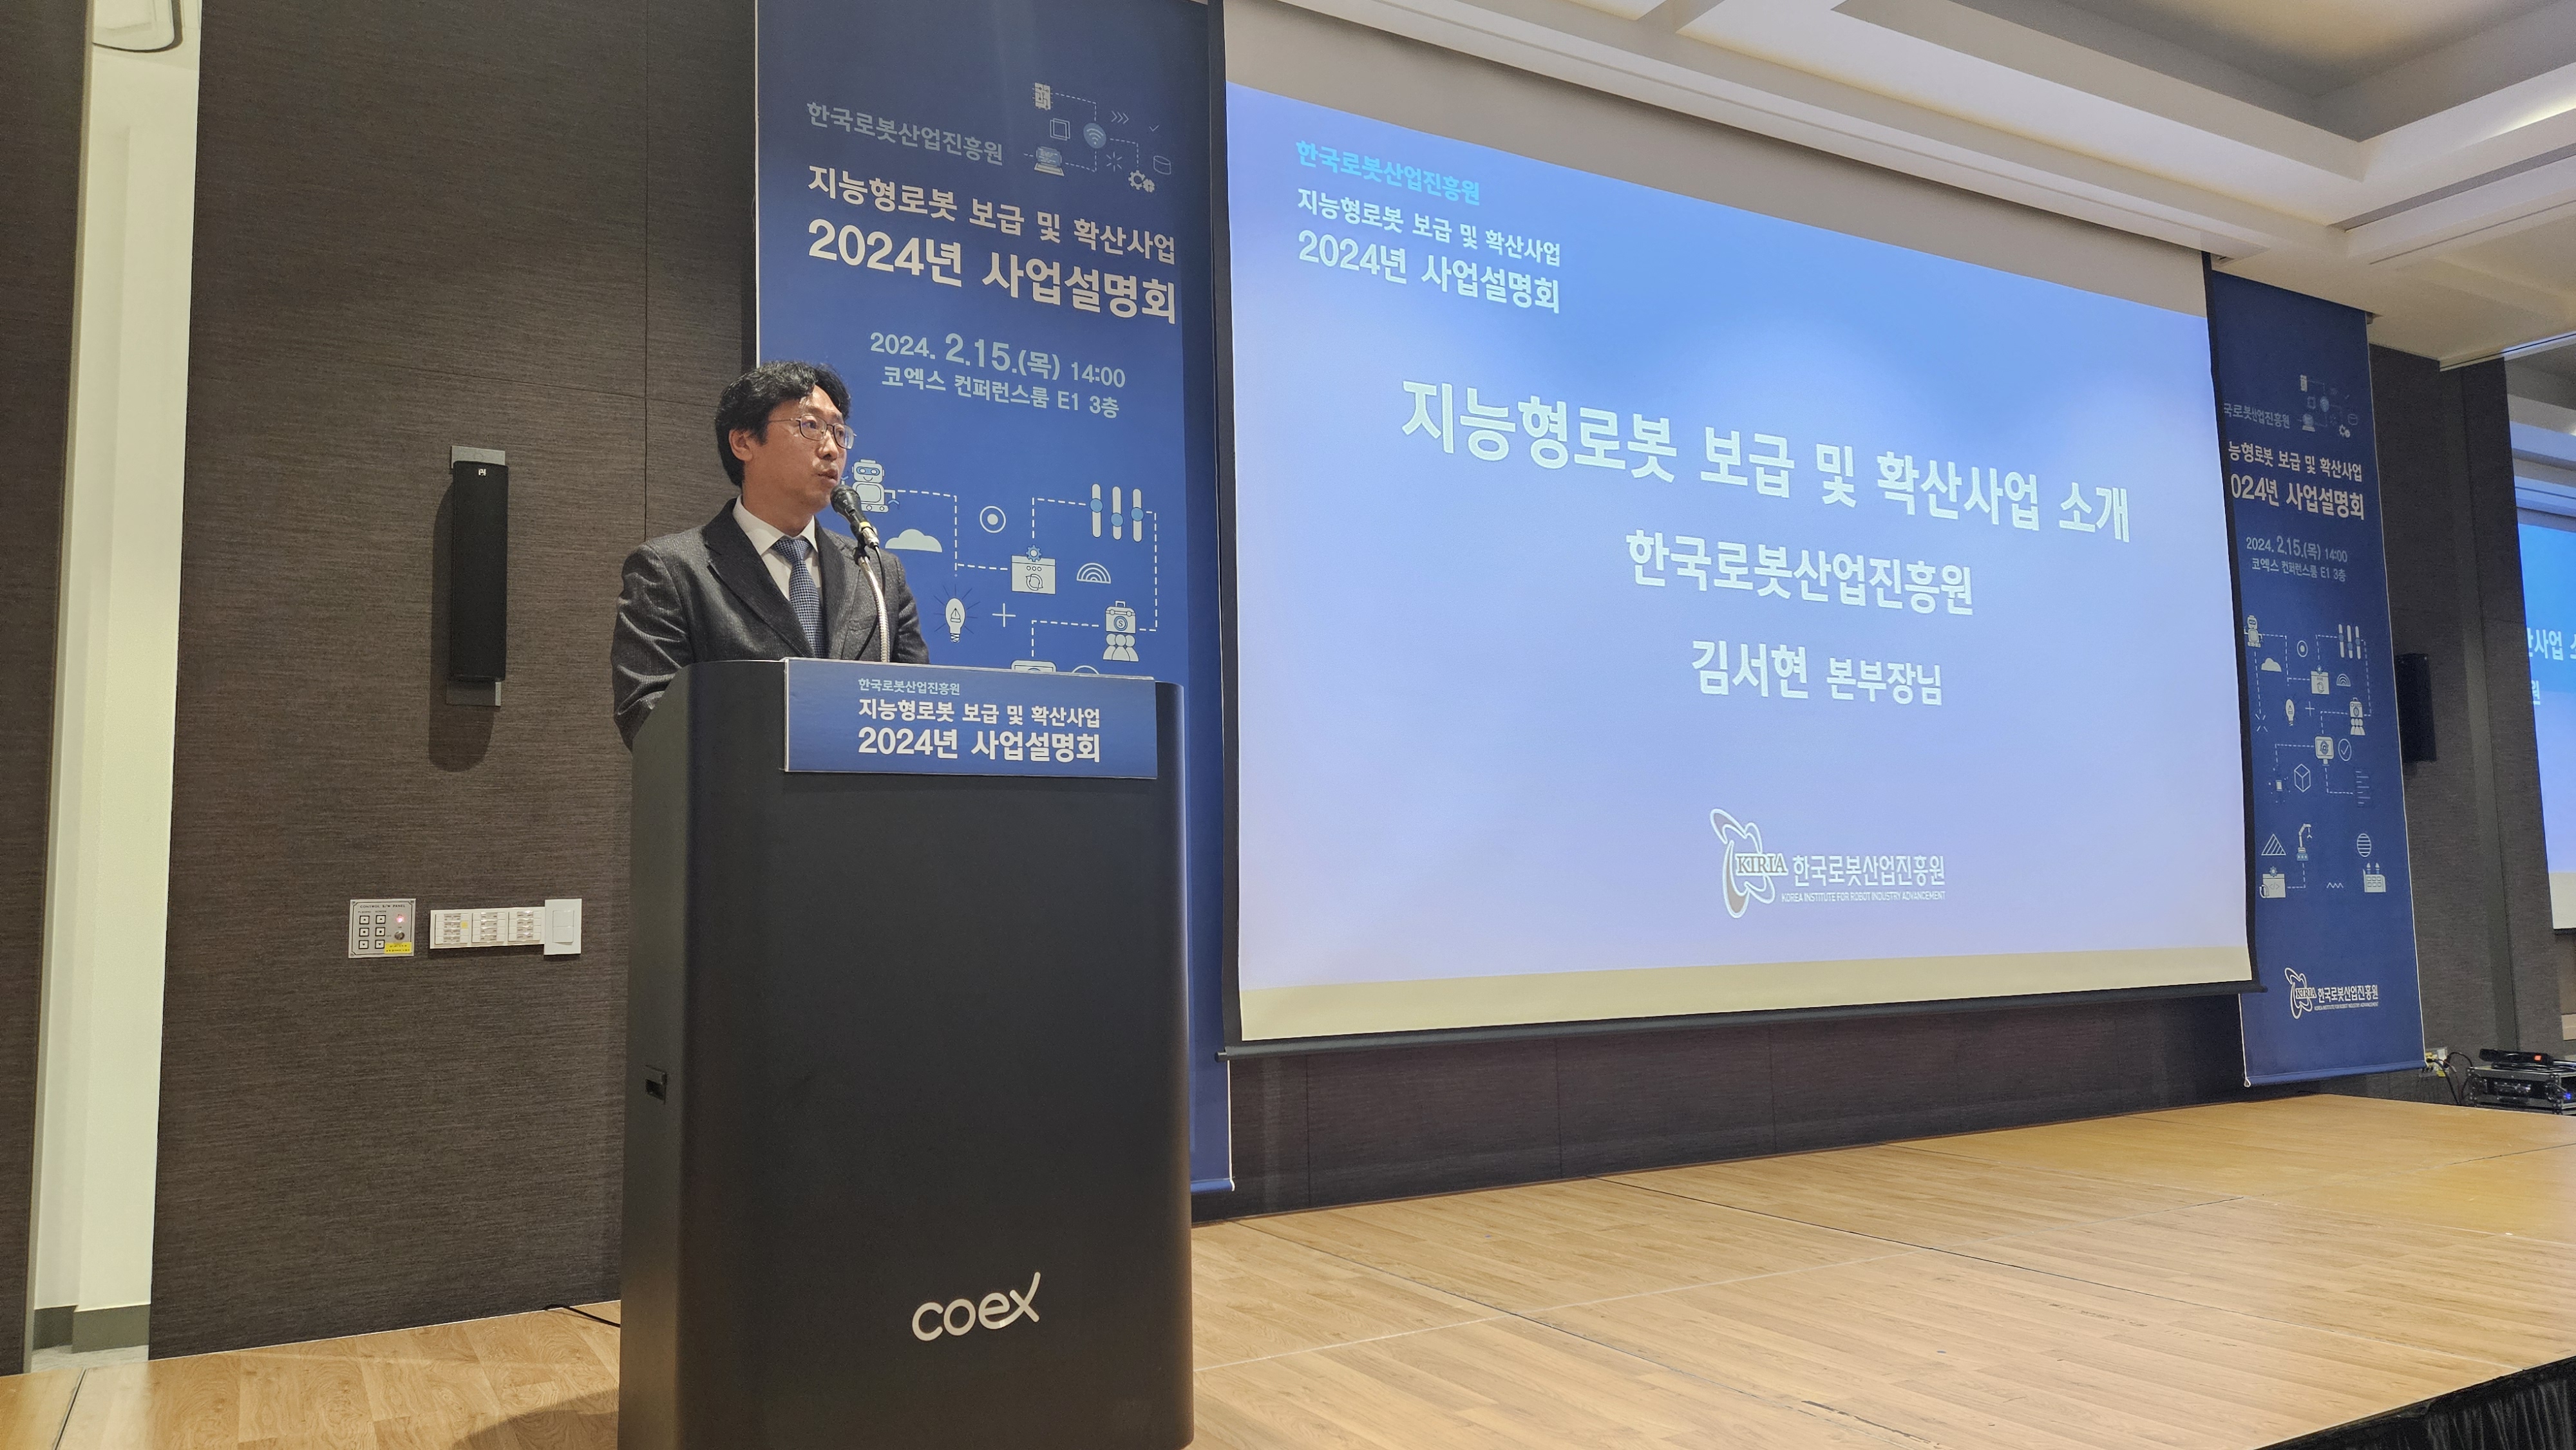 '24년 지능형로봇 보급 및 확산사업 통합 설명회 개최